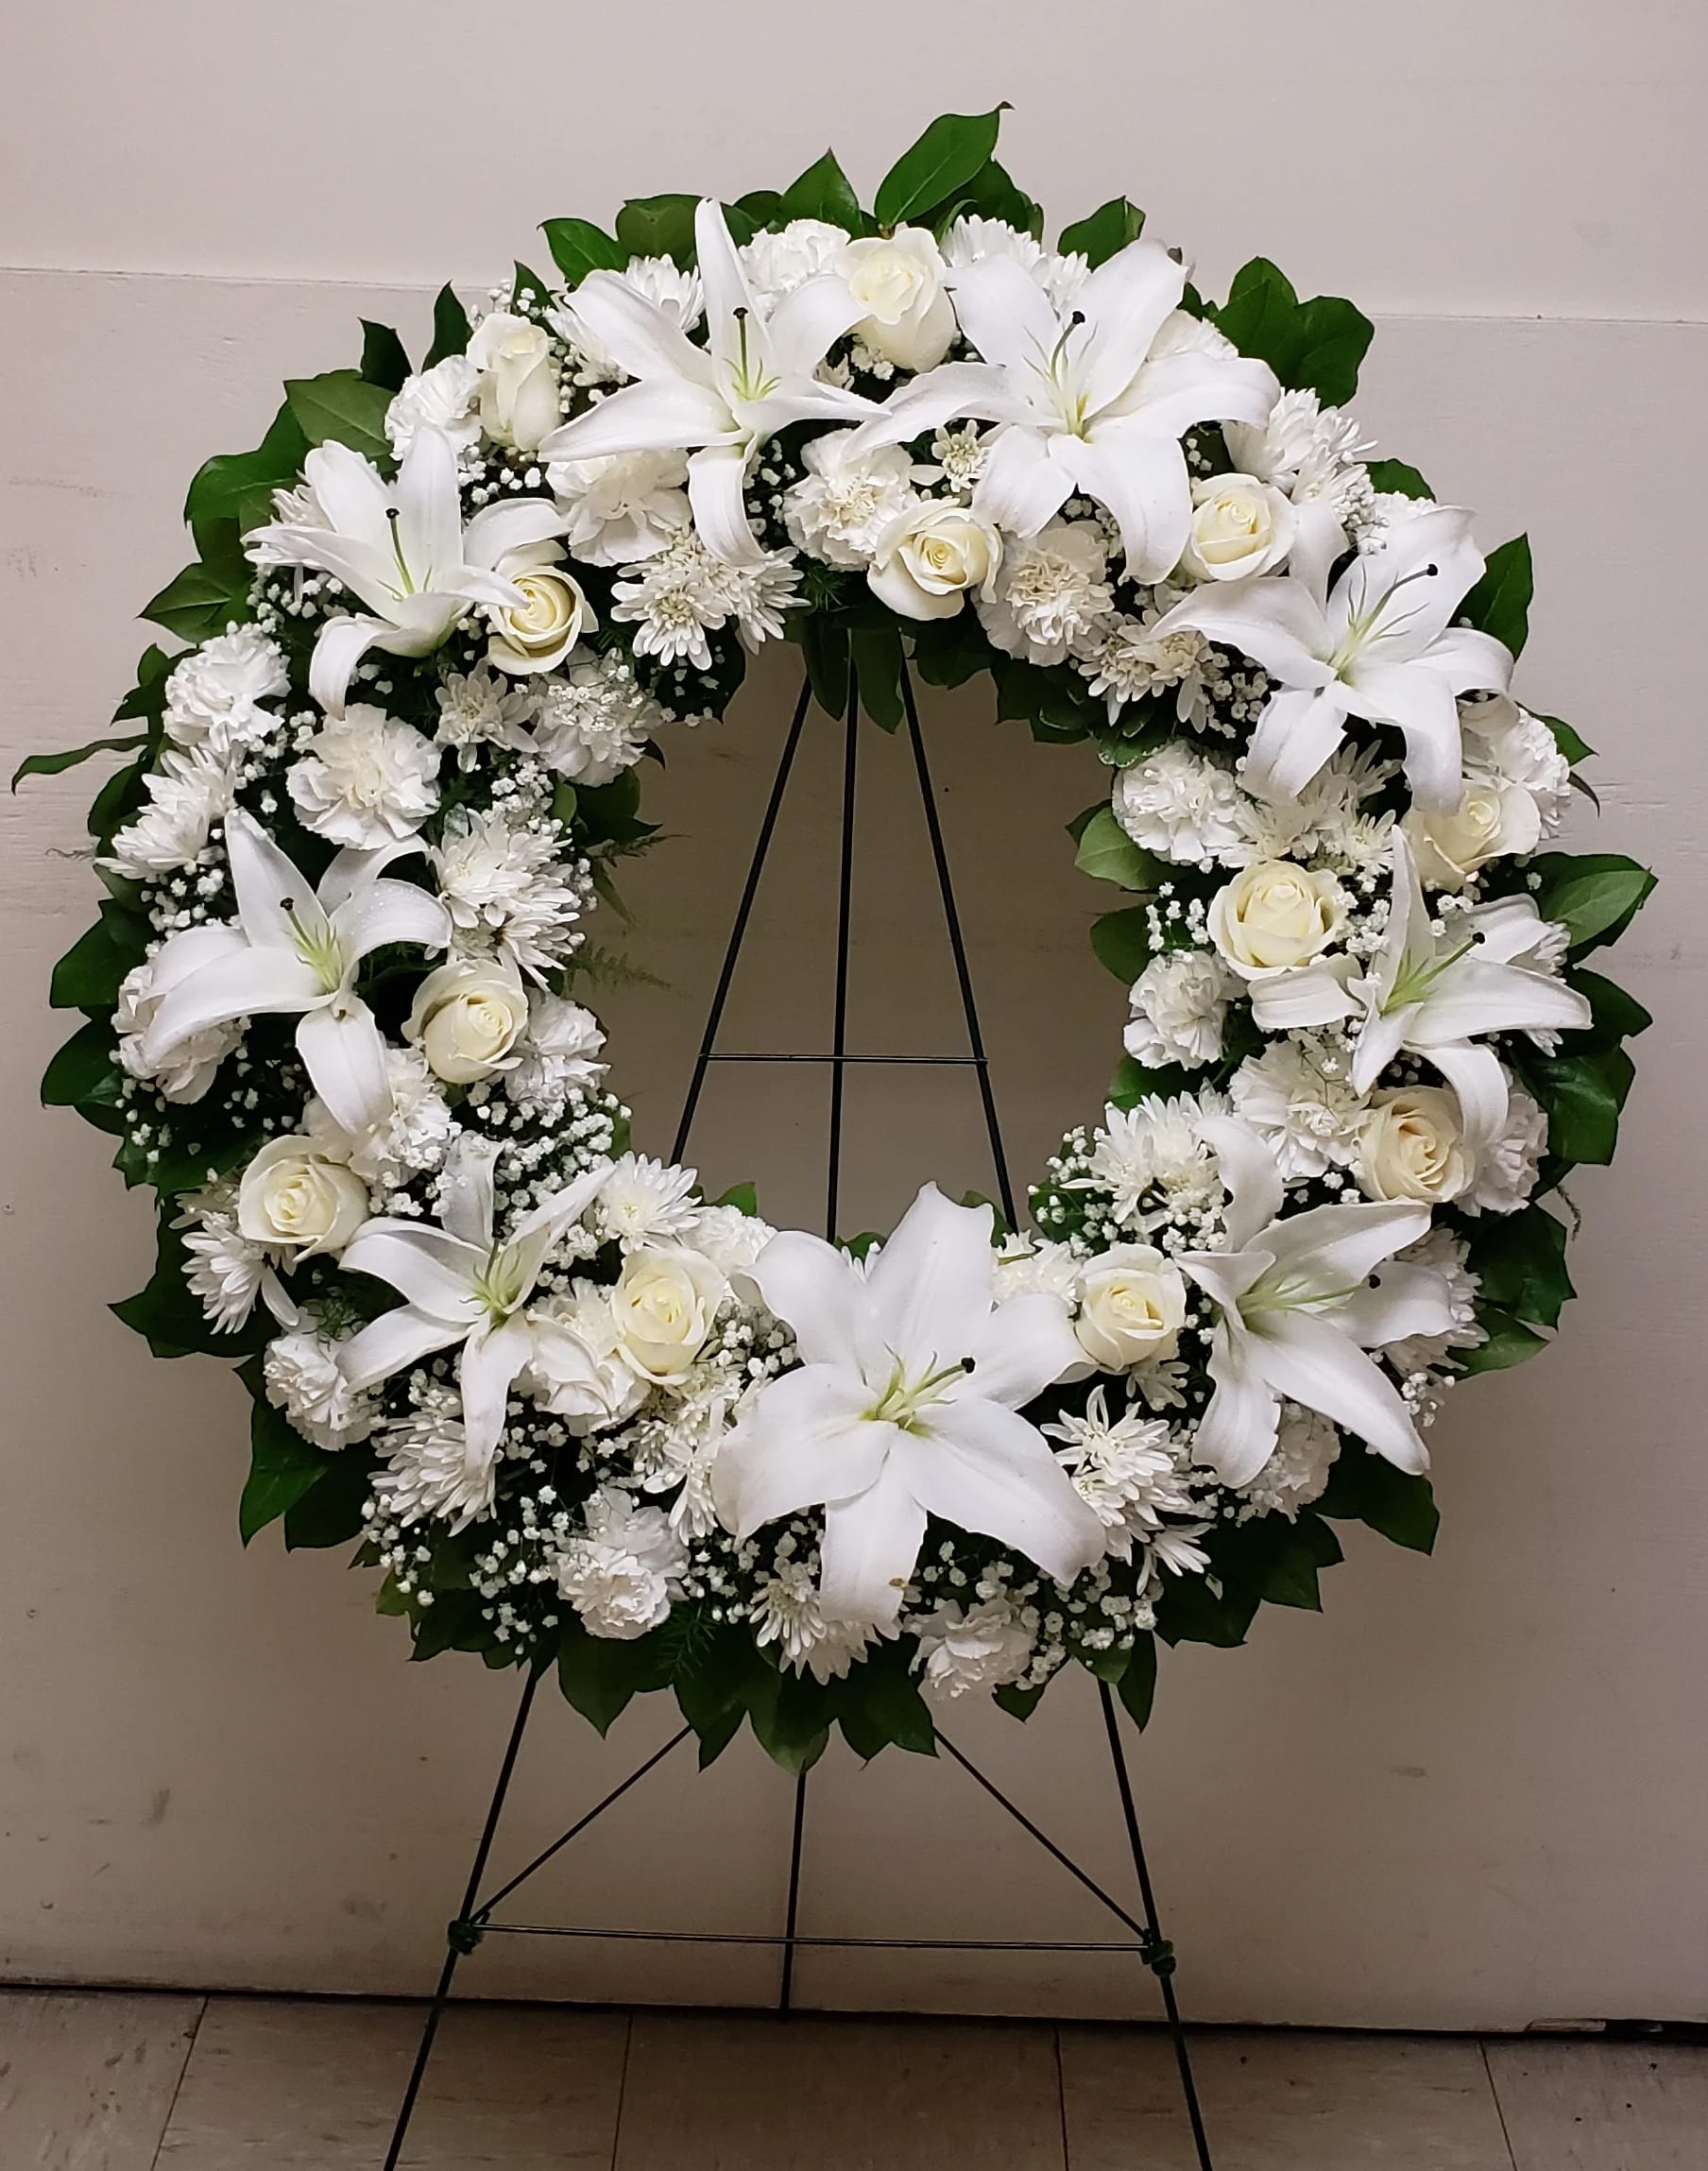 All White Wreath